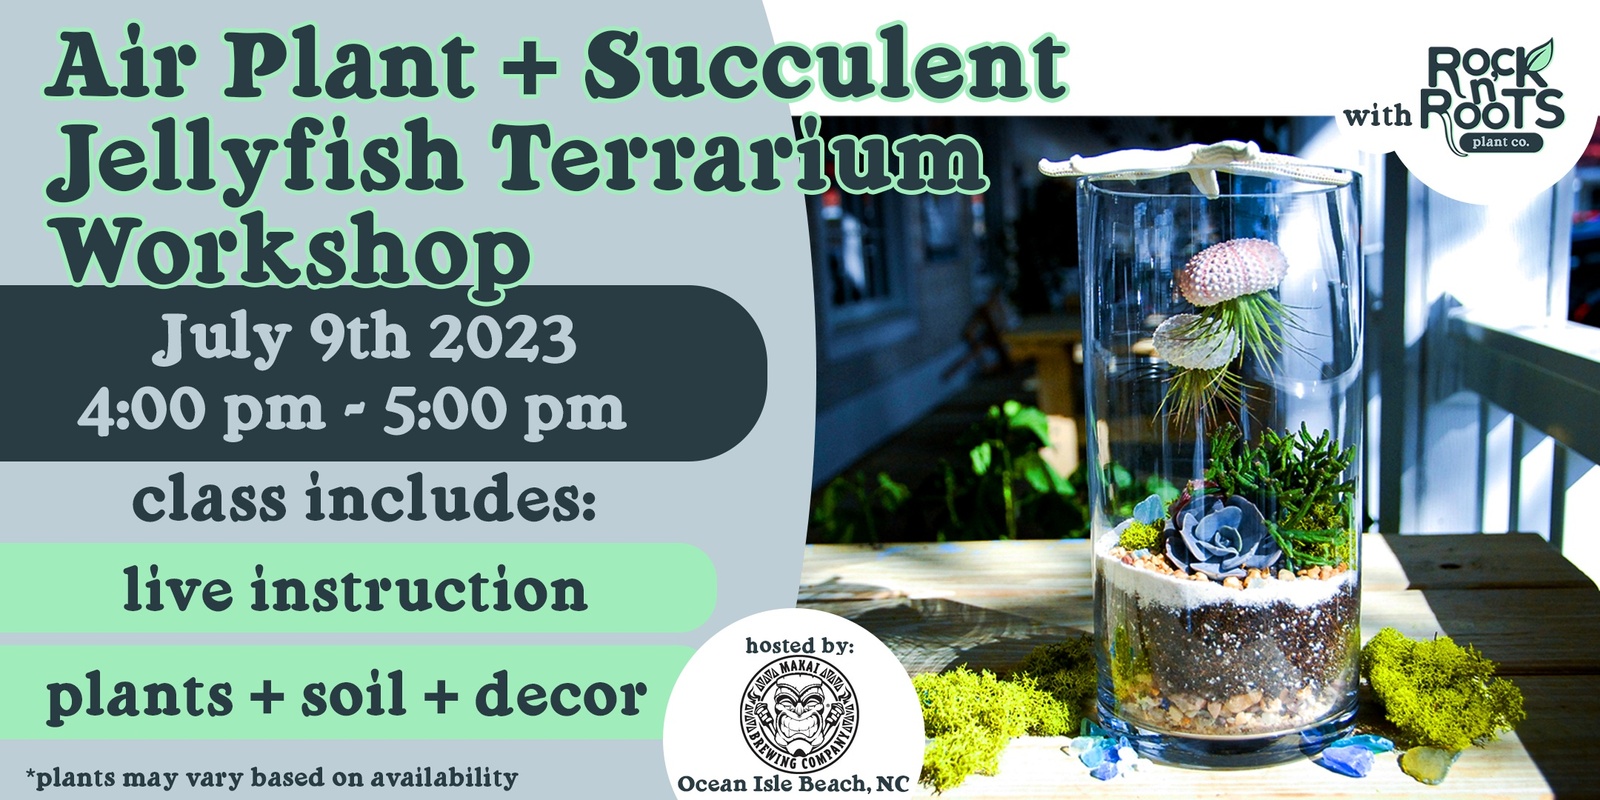 Air Plant + Succulent Jellyfish Terrarium Workshop at Makai Brewing (Ocean Isle Beach, NC)